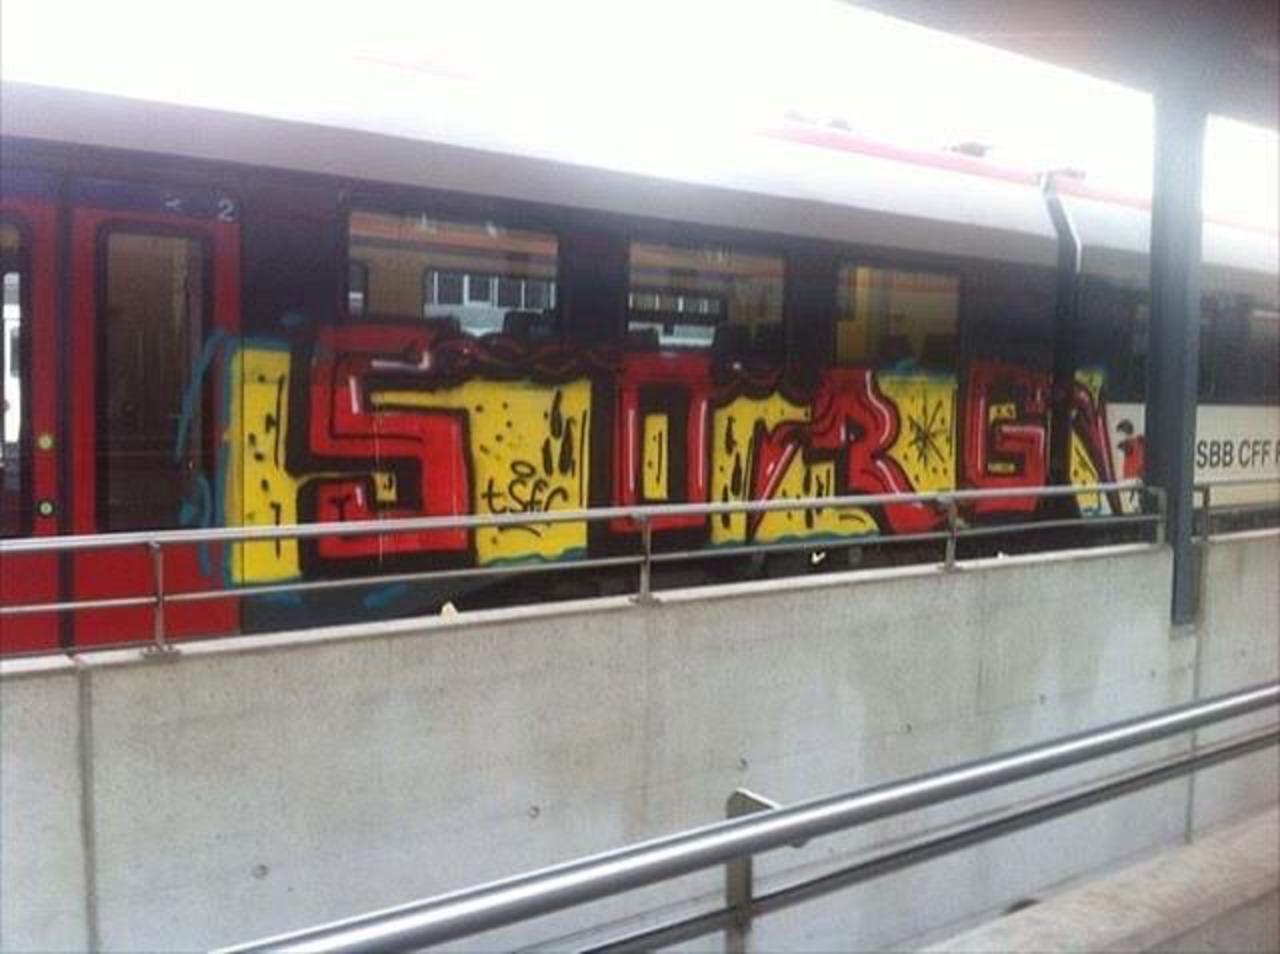 via #swiss.trains "http://bit.ly/1LXRDhD" #graffiti #streetart http://t.co/0uSiO4TcUt